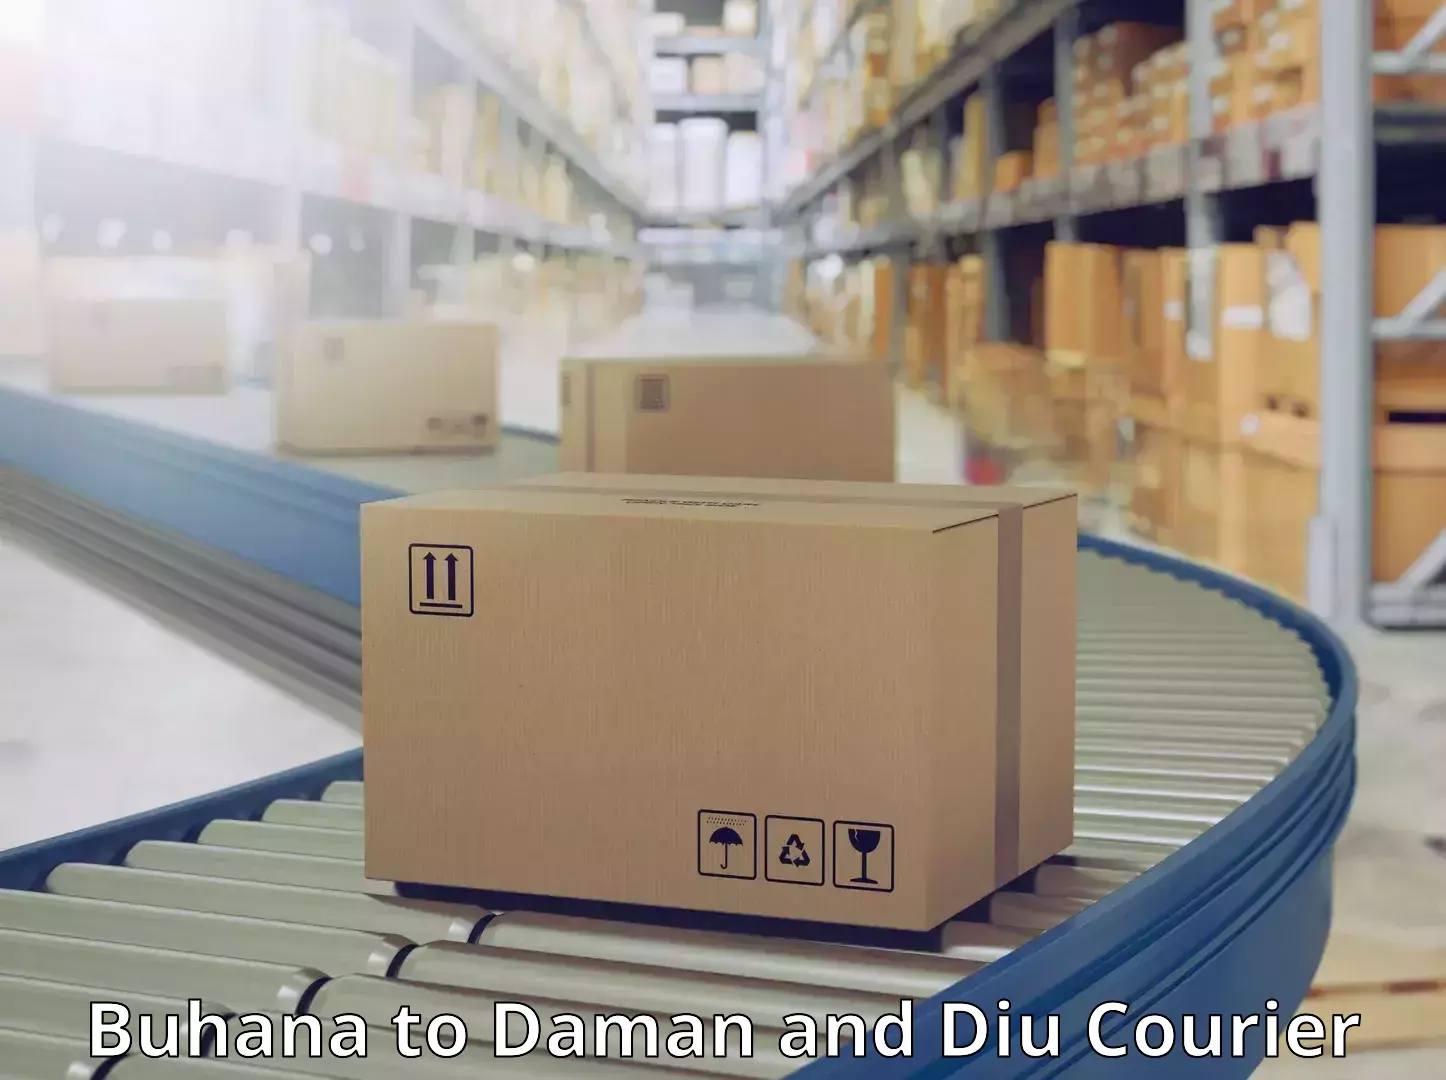 Versatile courier options Buhana to Daman and Diu